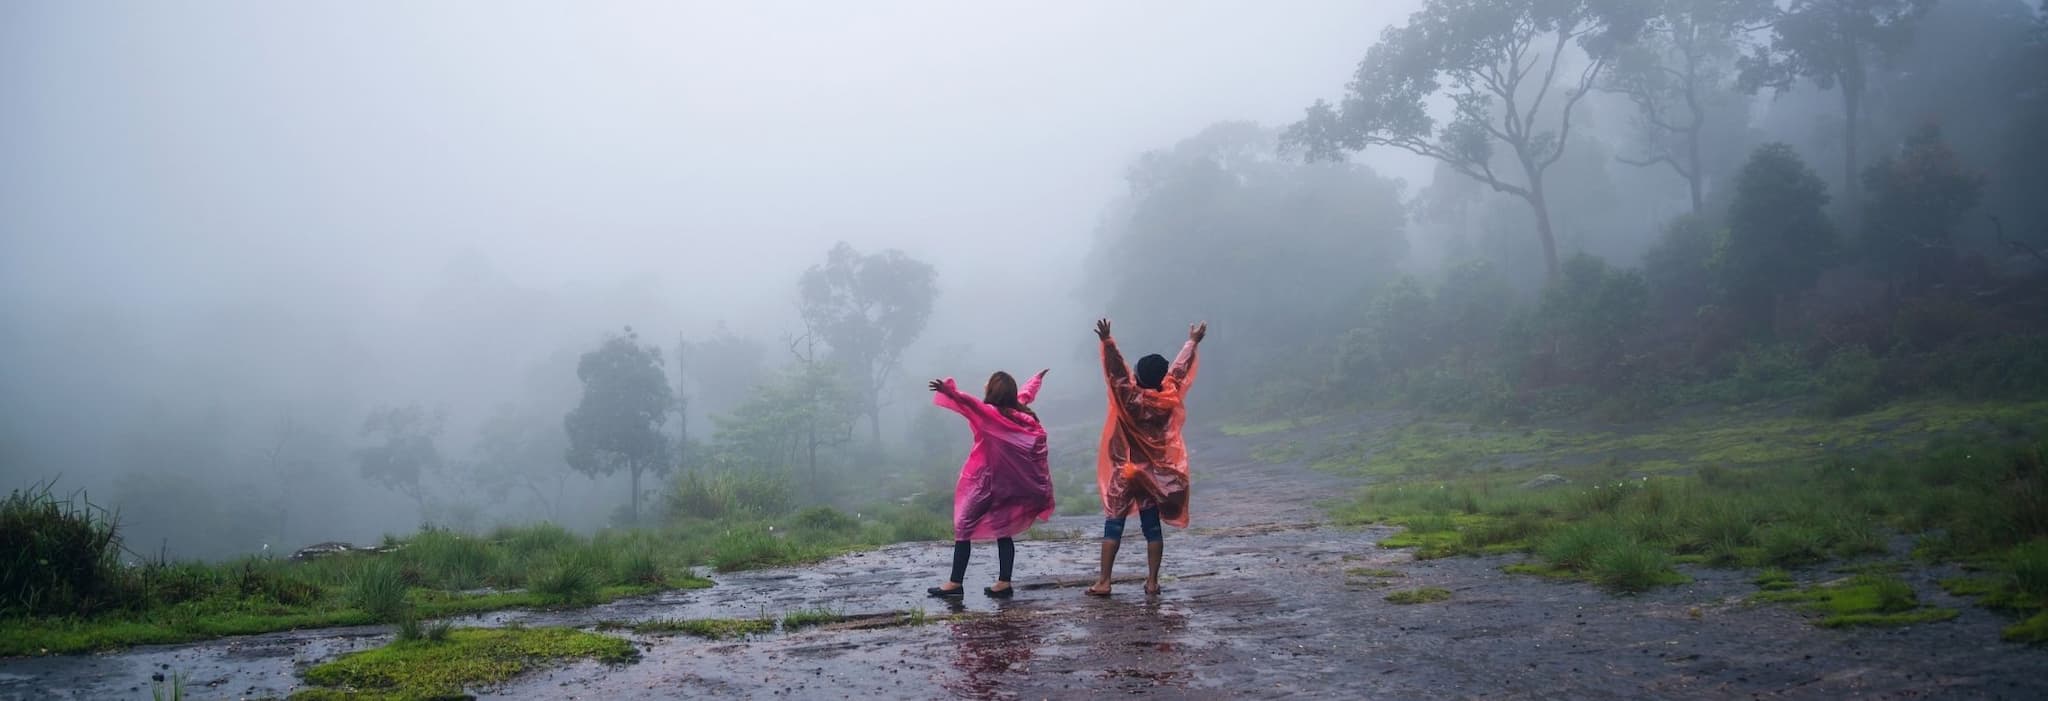 10 Travel Tips for Monsoon